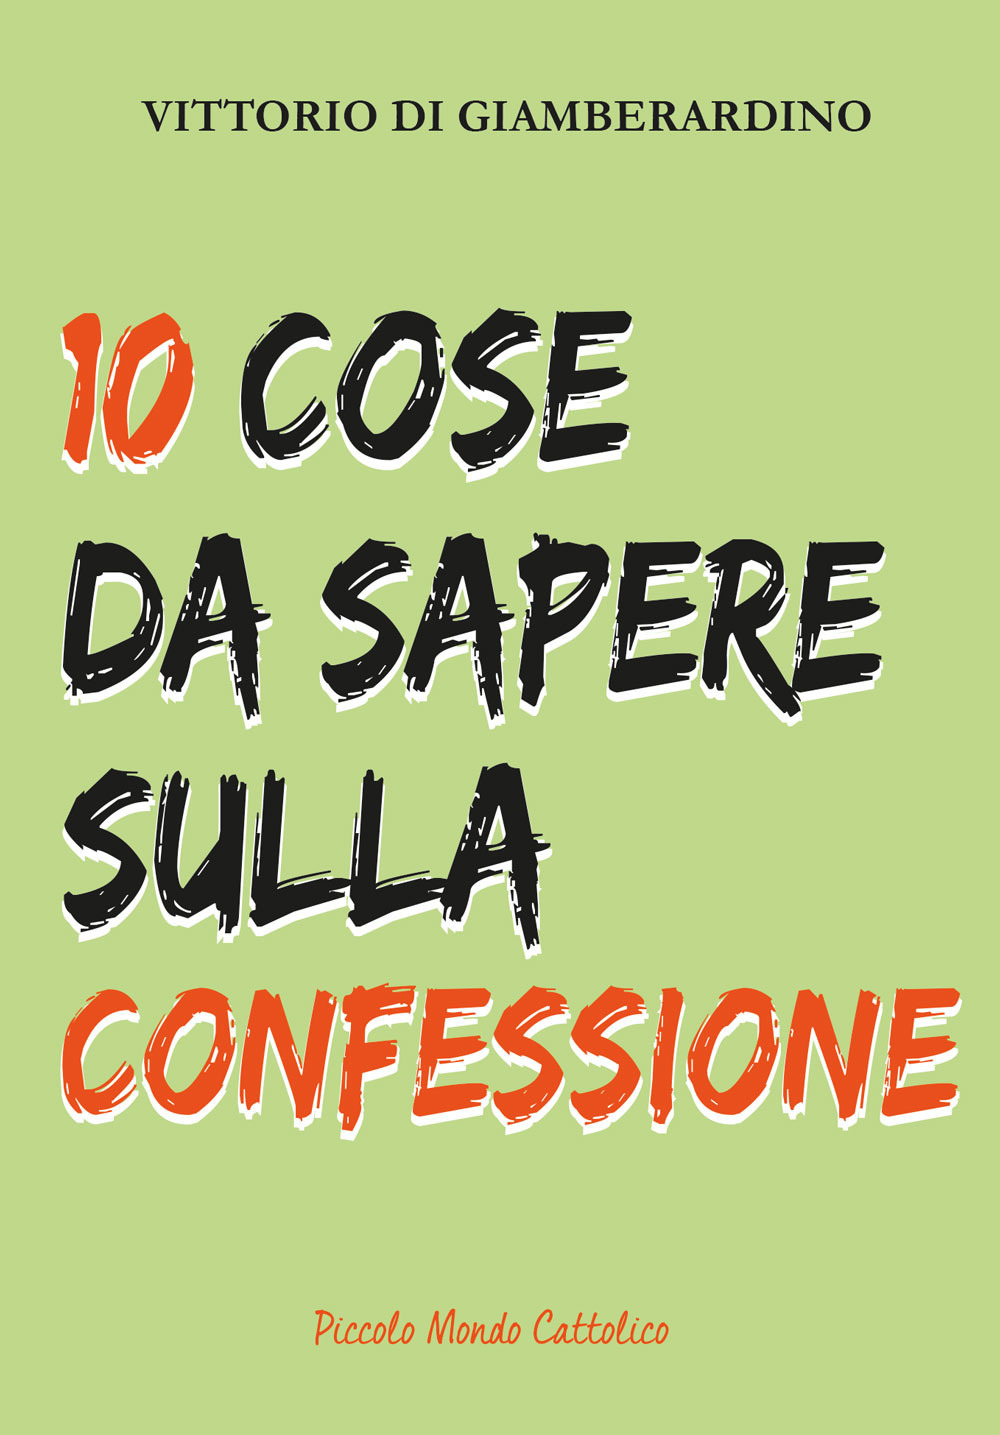 10 cose da sapere sulla confessione. Confessarsi è bello!